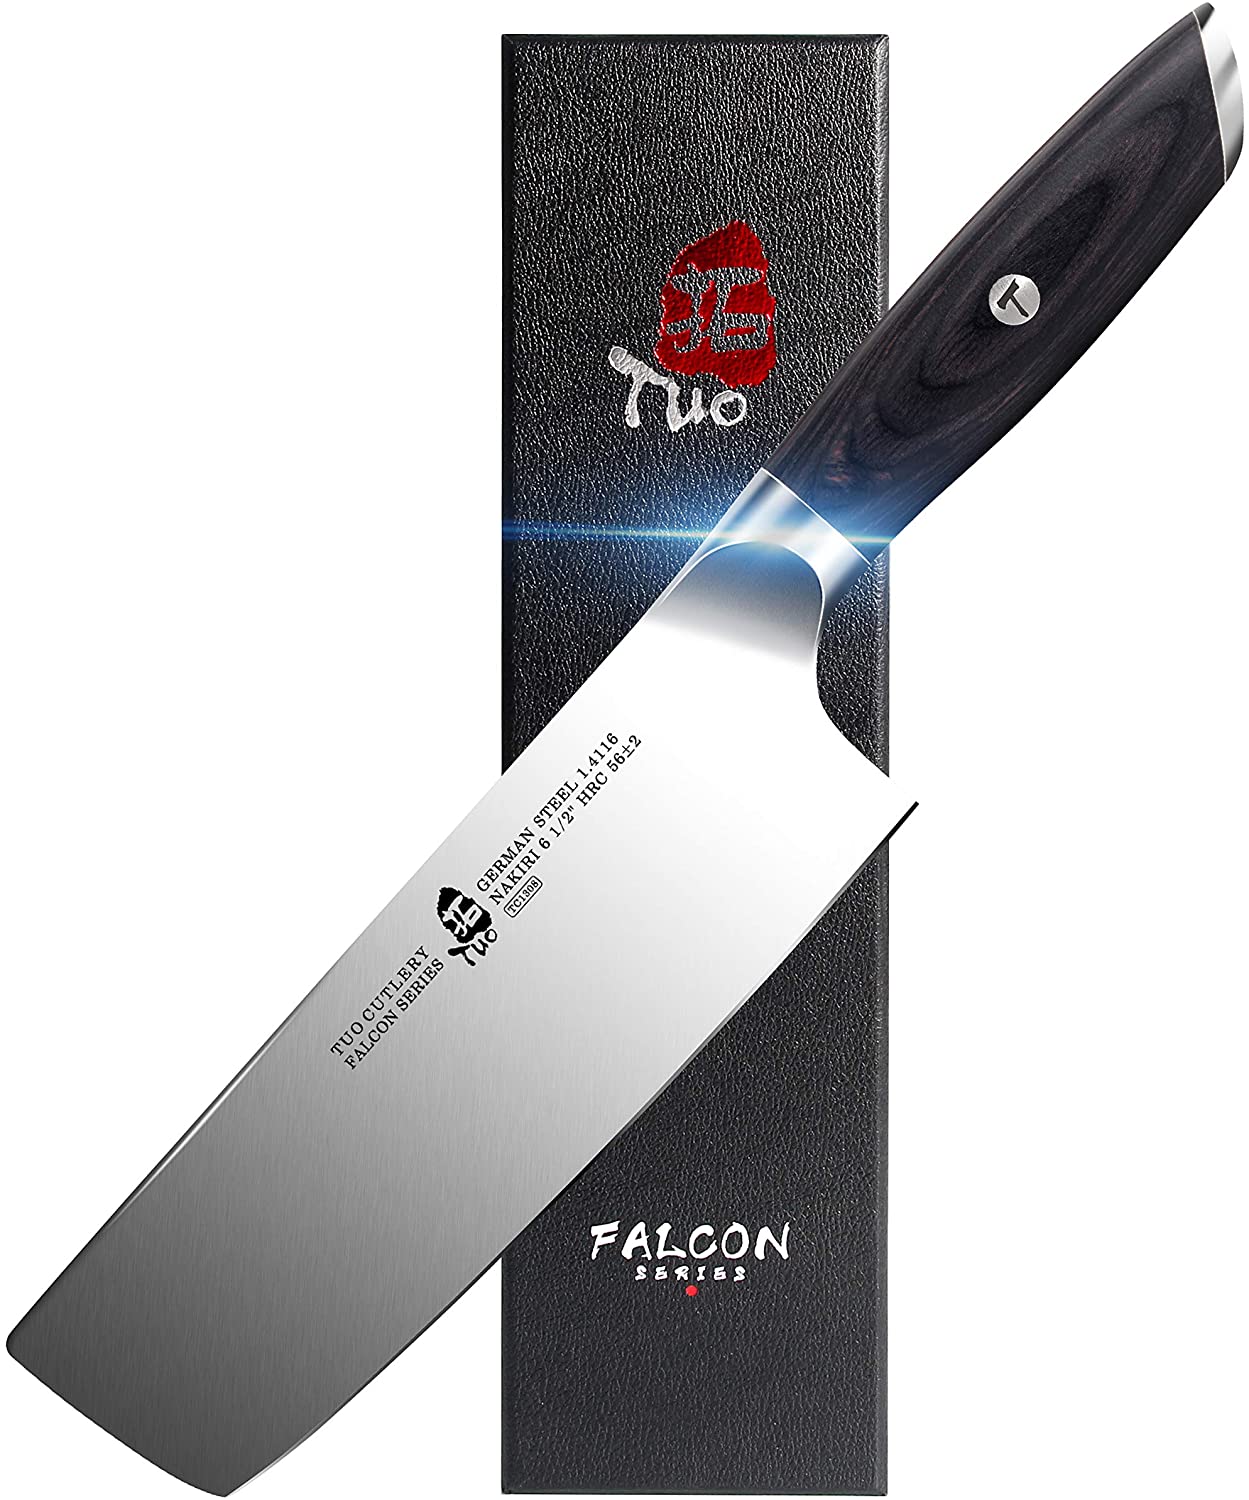 MAC Knife MAC 6.5 Nakiri Knife - Whisk